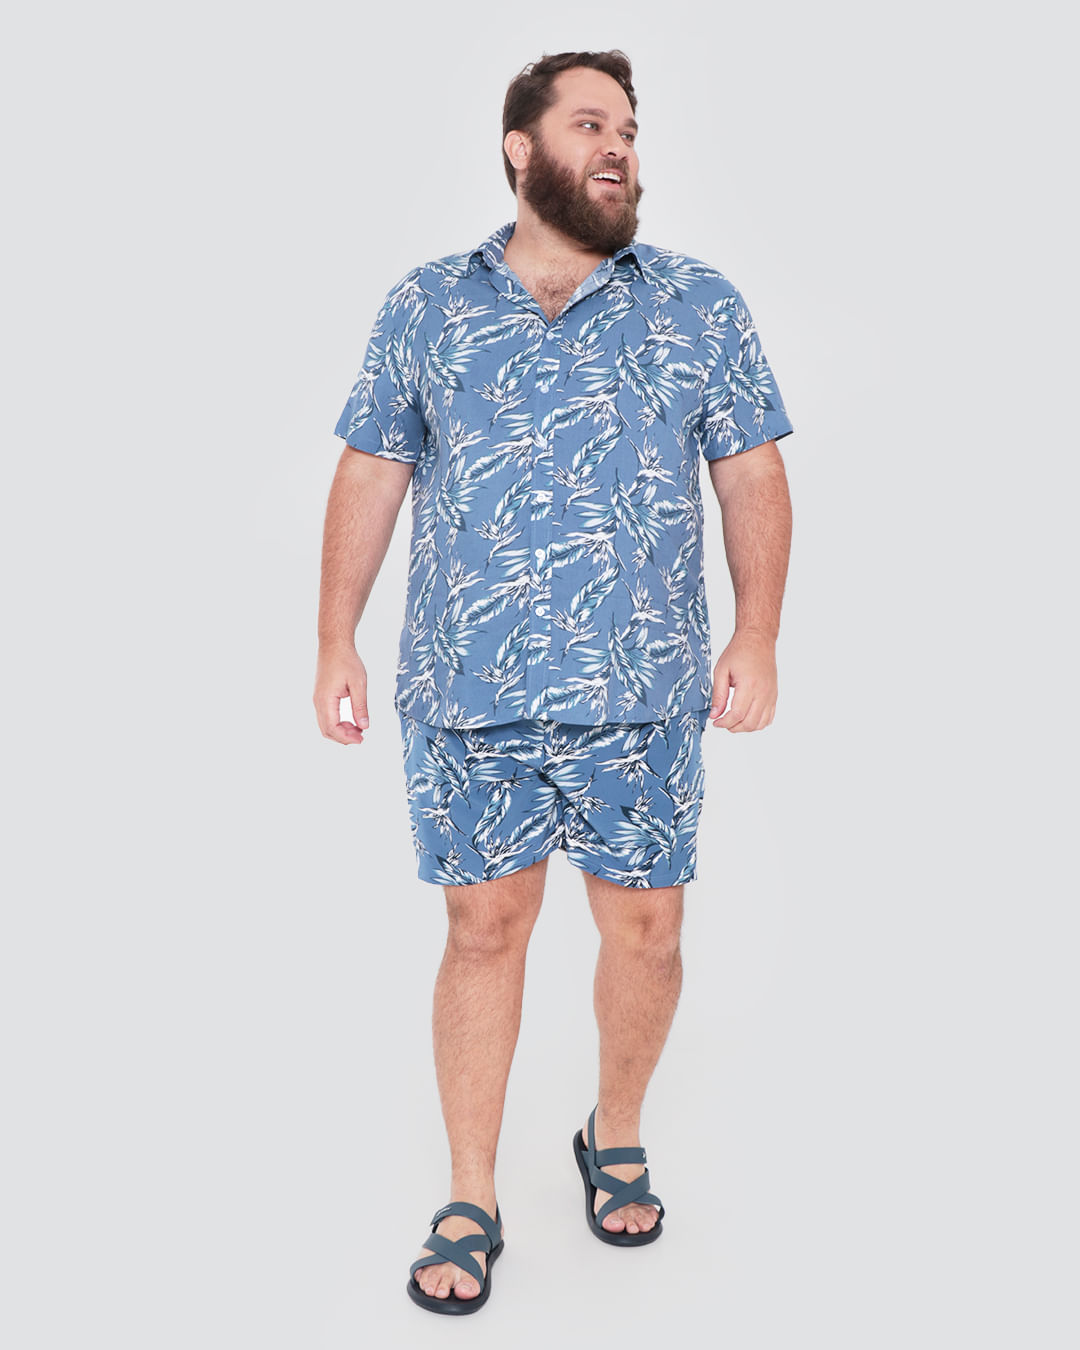 Camisa Masculina Plus Size Estampa Folhagem Azul